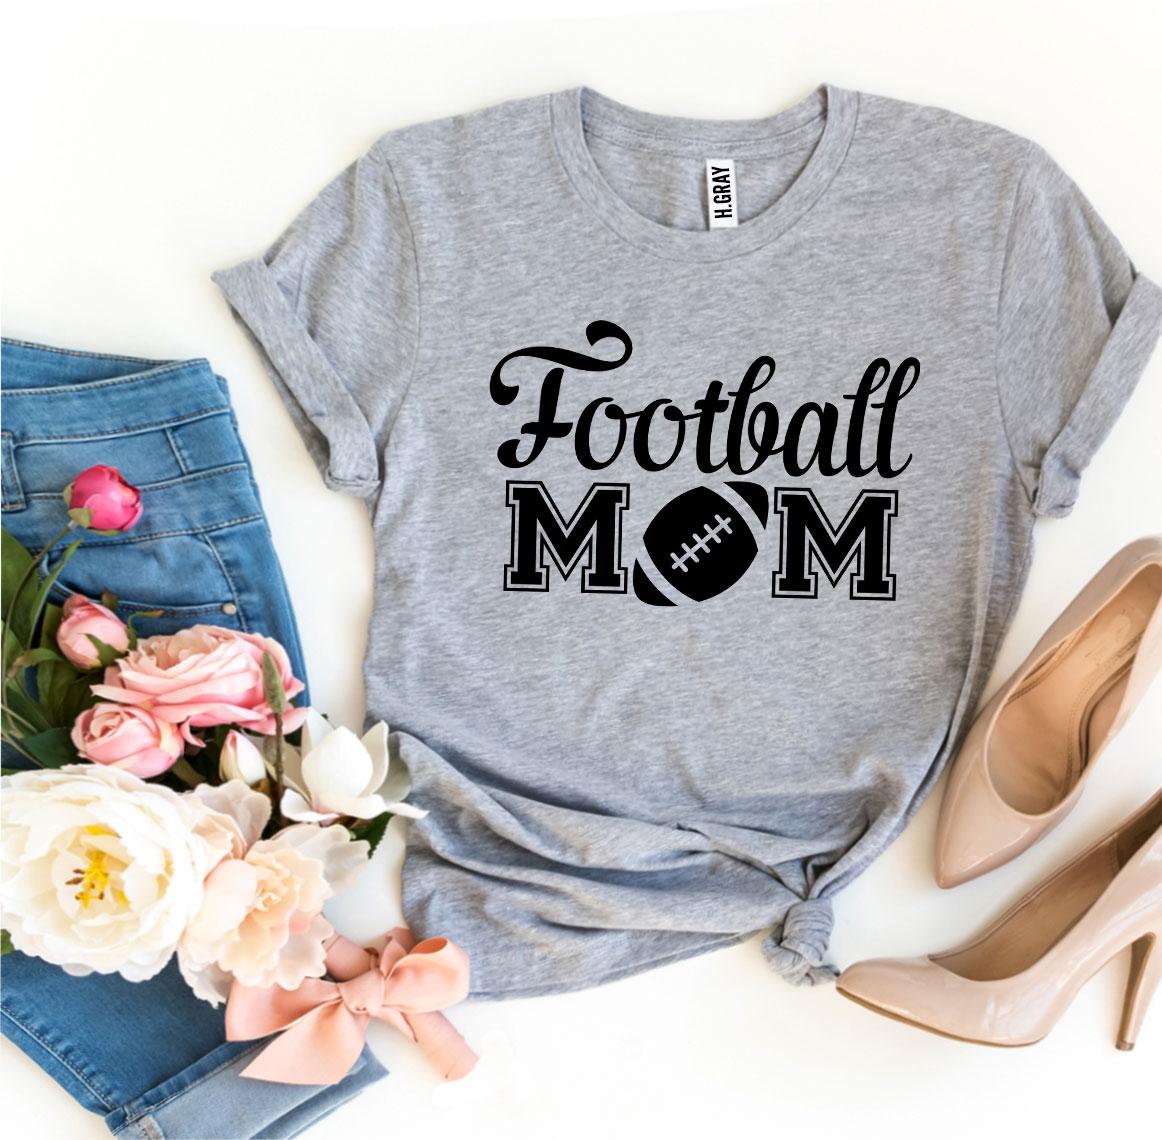 Football Mom T-shirt